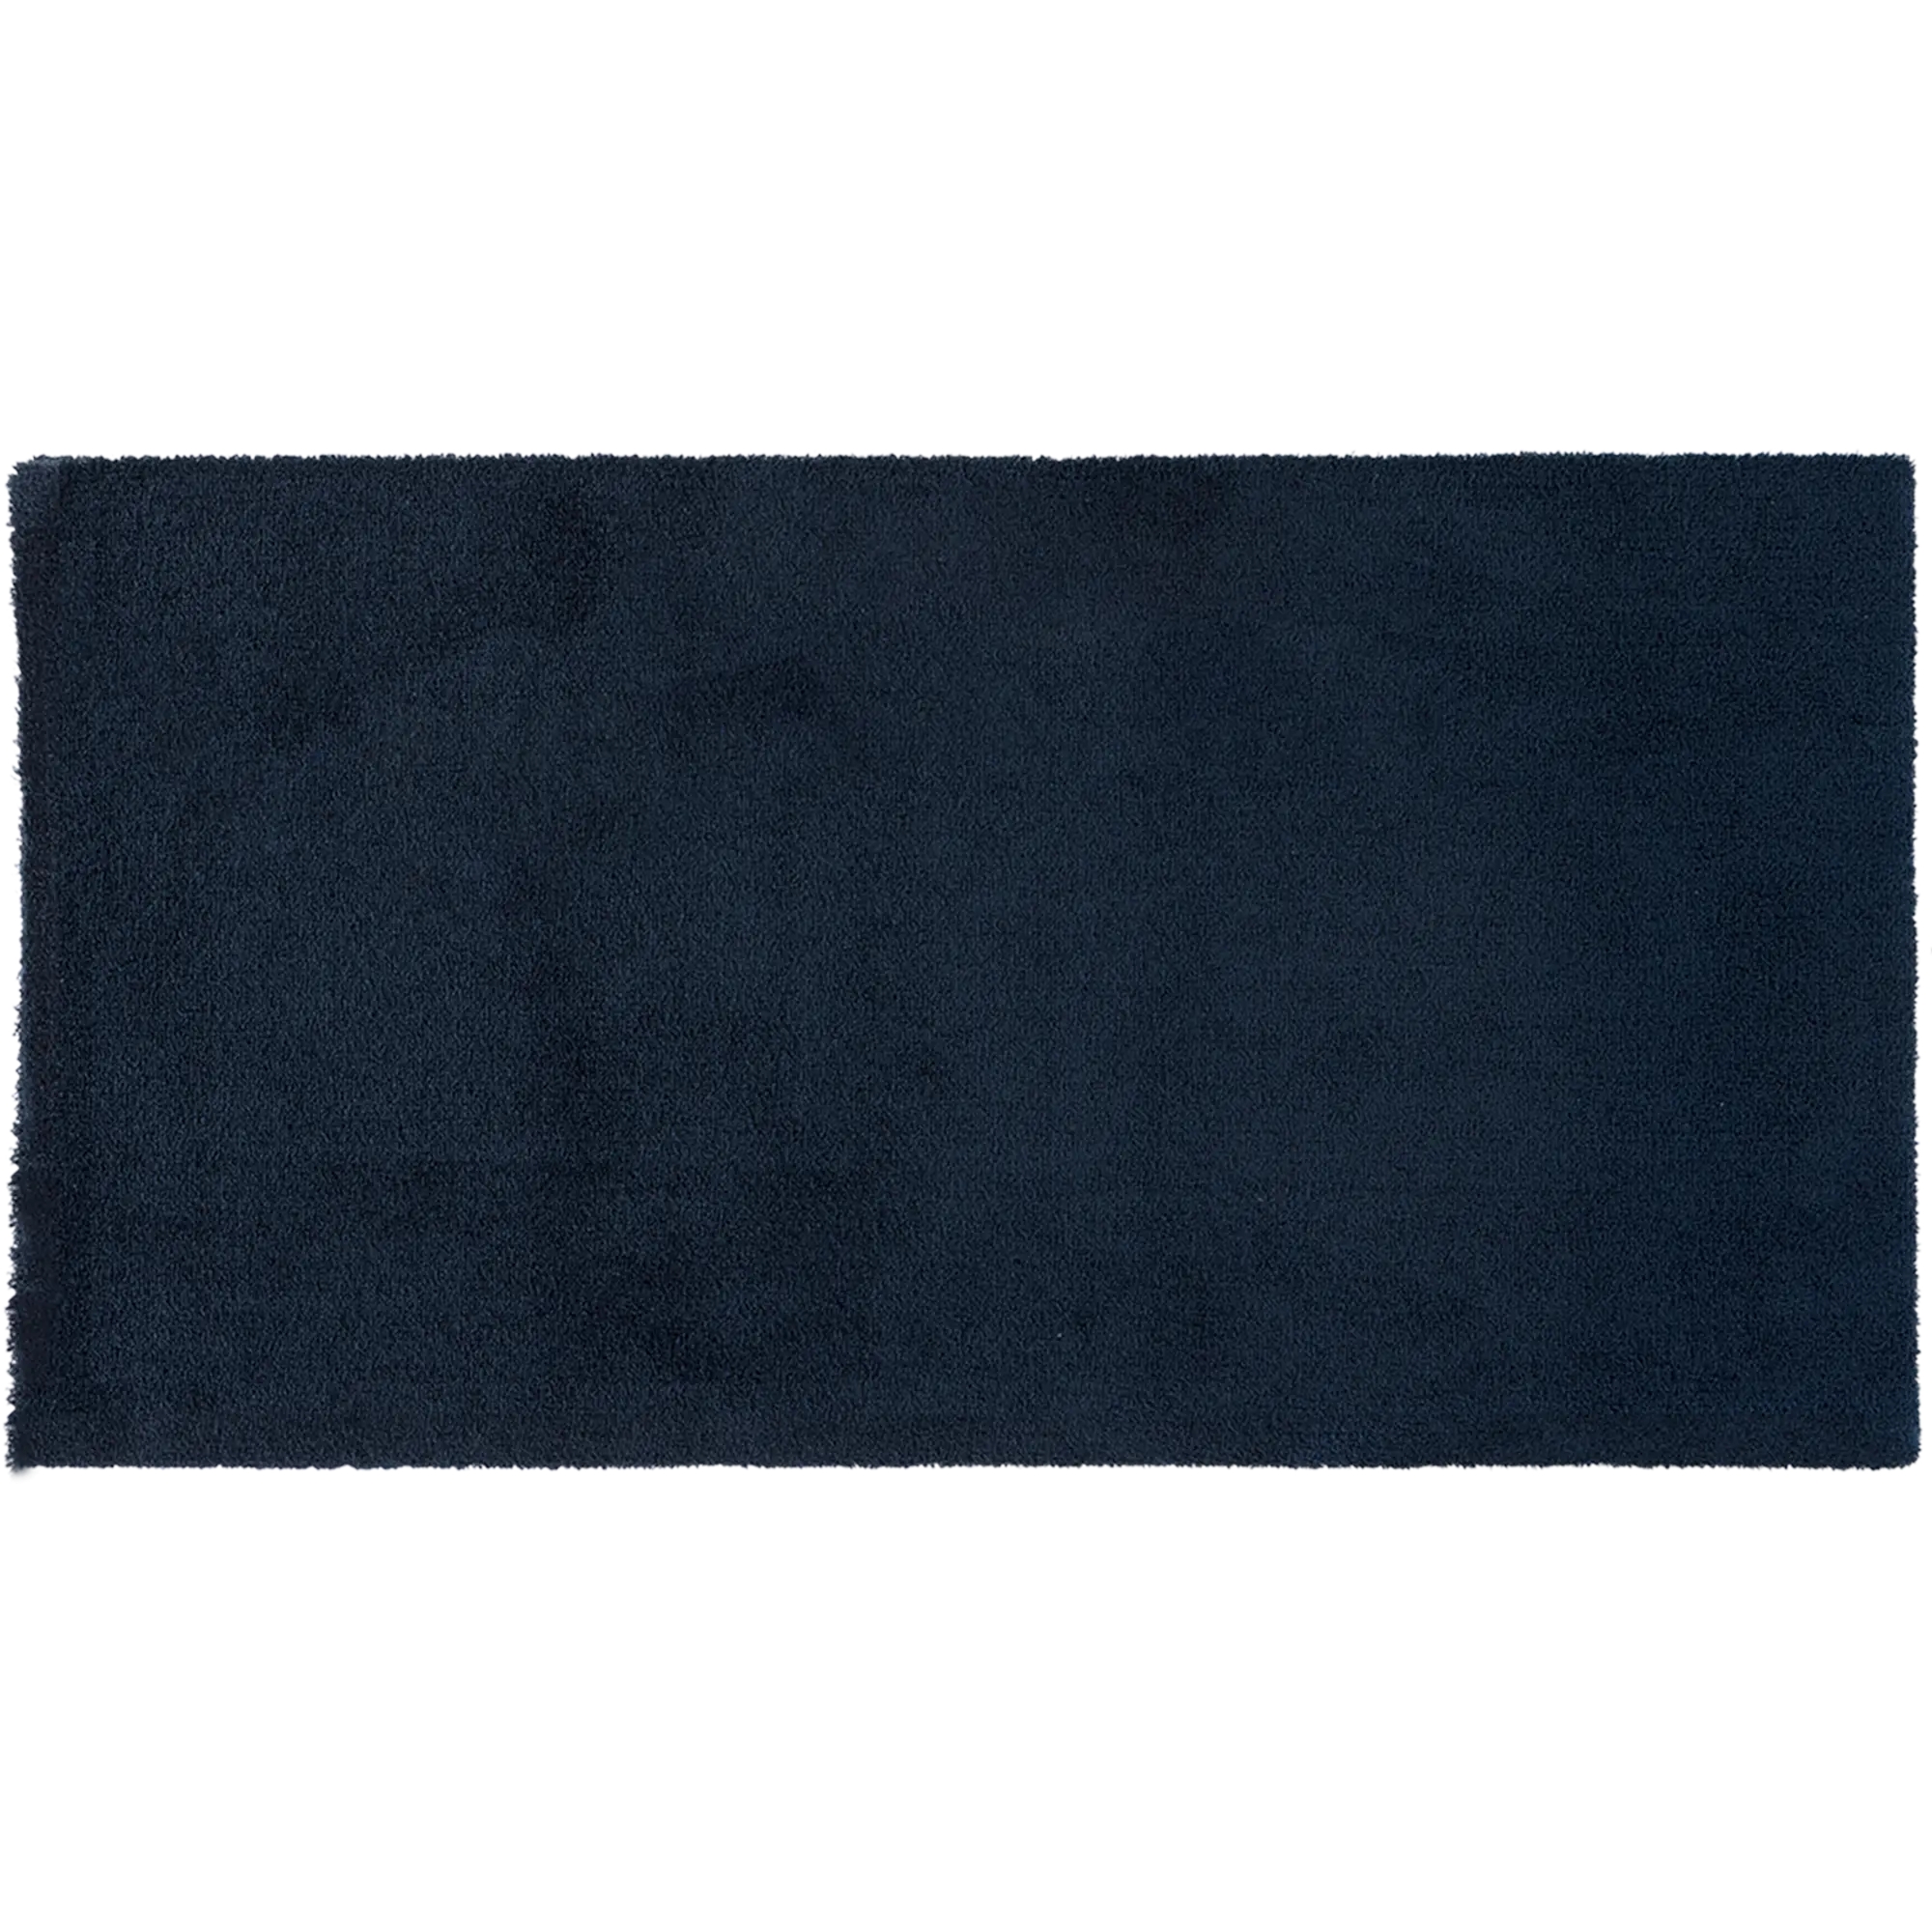 Scendiletto Tony in poliestere, blu, 60x115 - 1